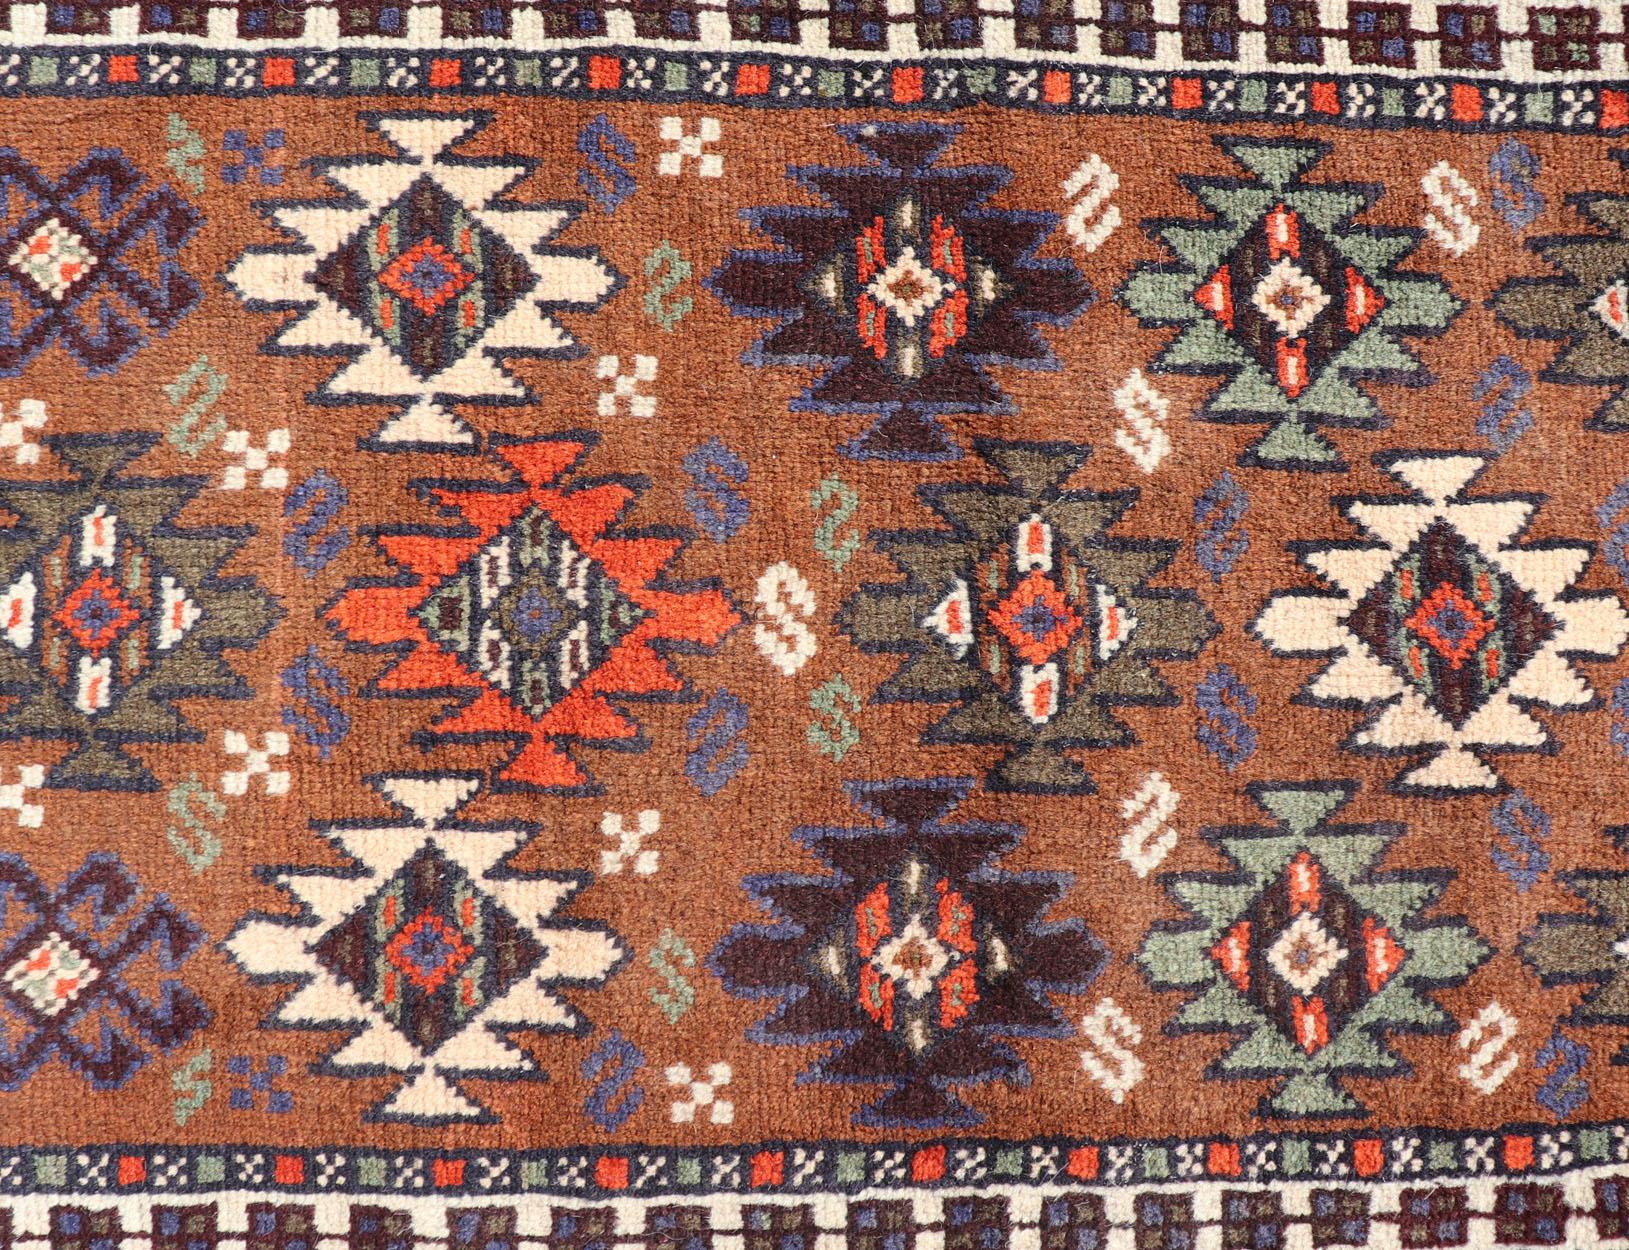 Vieux tapis Kars turc avec motif tribal dans des couleurs orange-marron. Keivan Woven Arts / tapis EMB-9663-P13552, pays d'origine / type : Turquie / Oushak, vers le milieu du 20ème siècle.

Ce chemin de table vintage présente un assortiment de